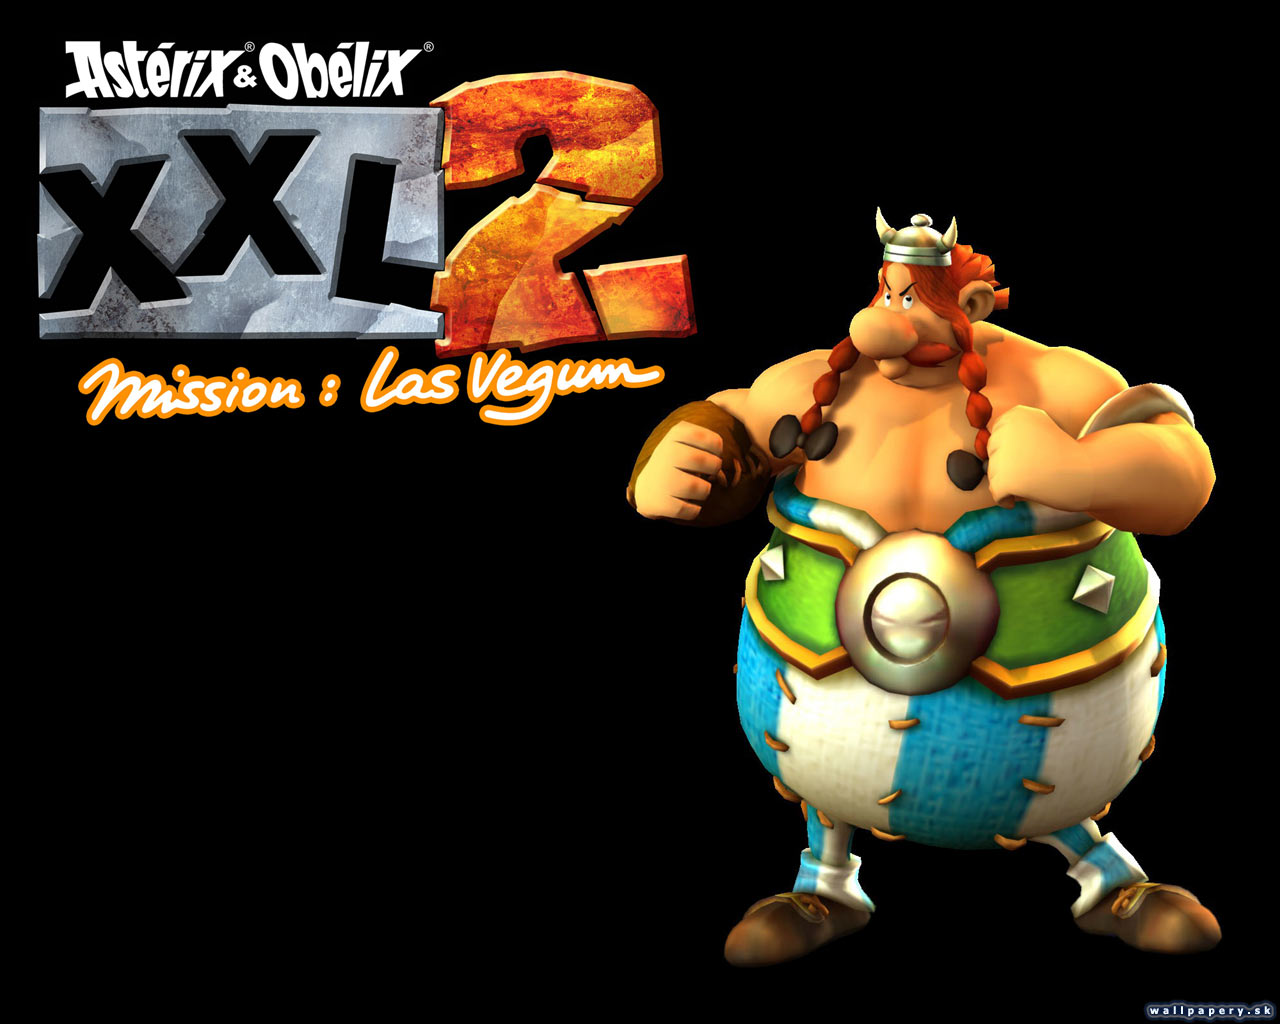 Asterix & Obelix XXL 2: Mission Las Vegum - wallpaper 2